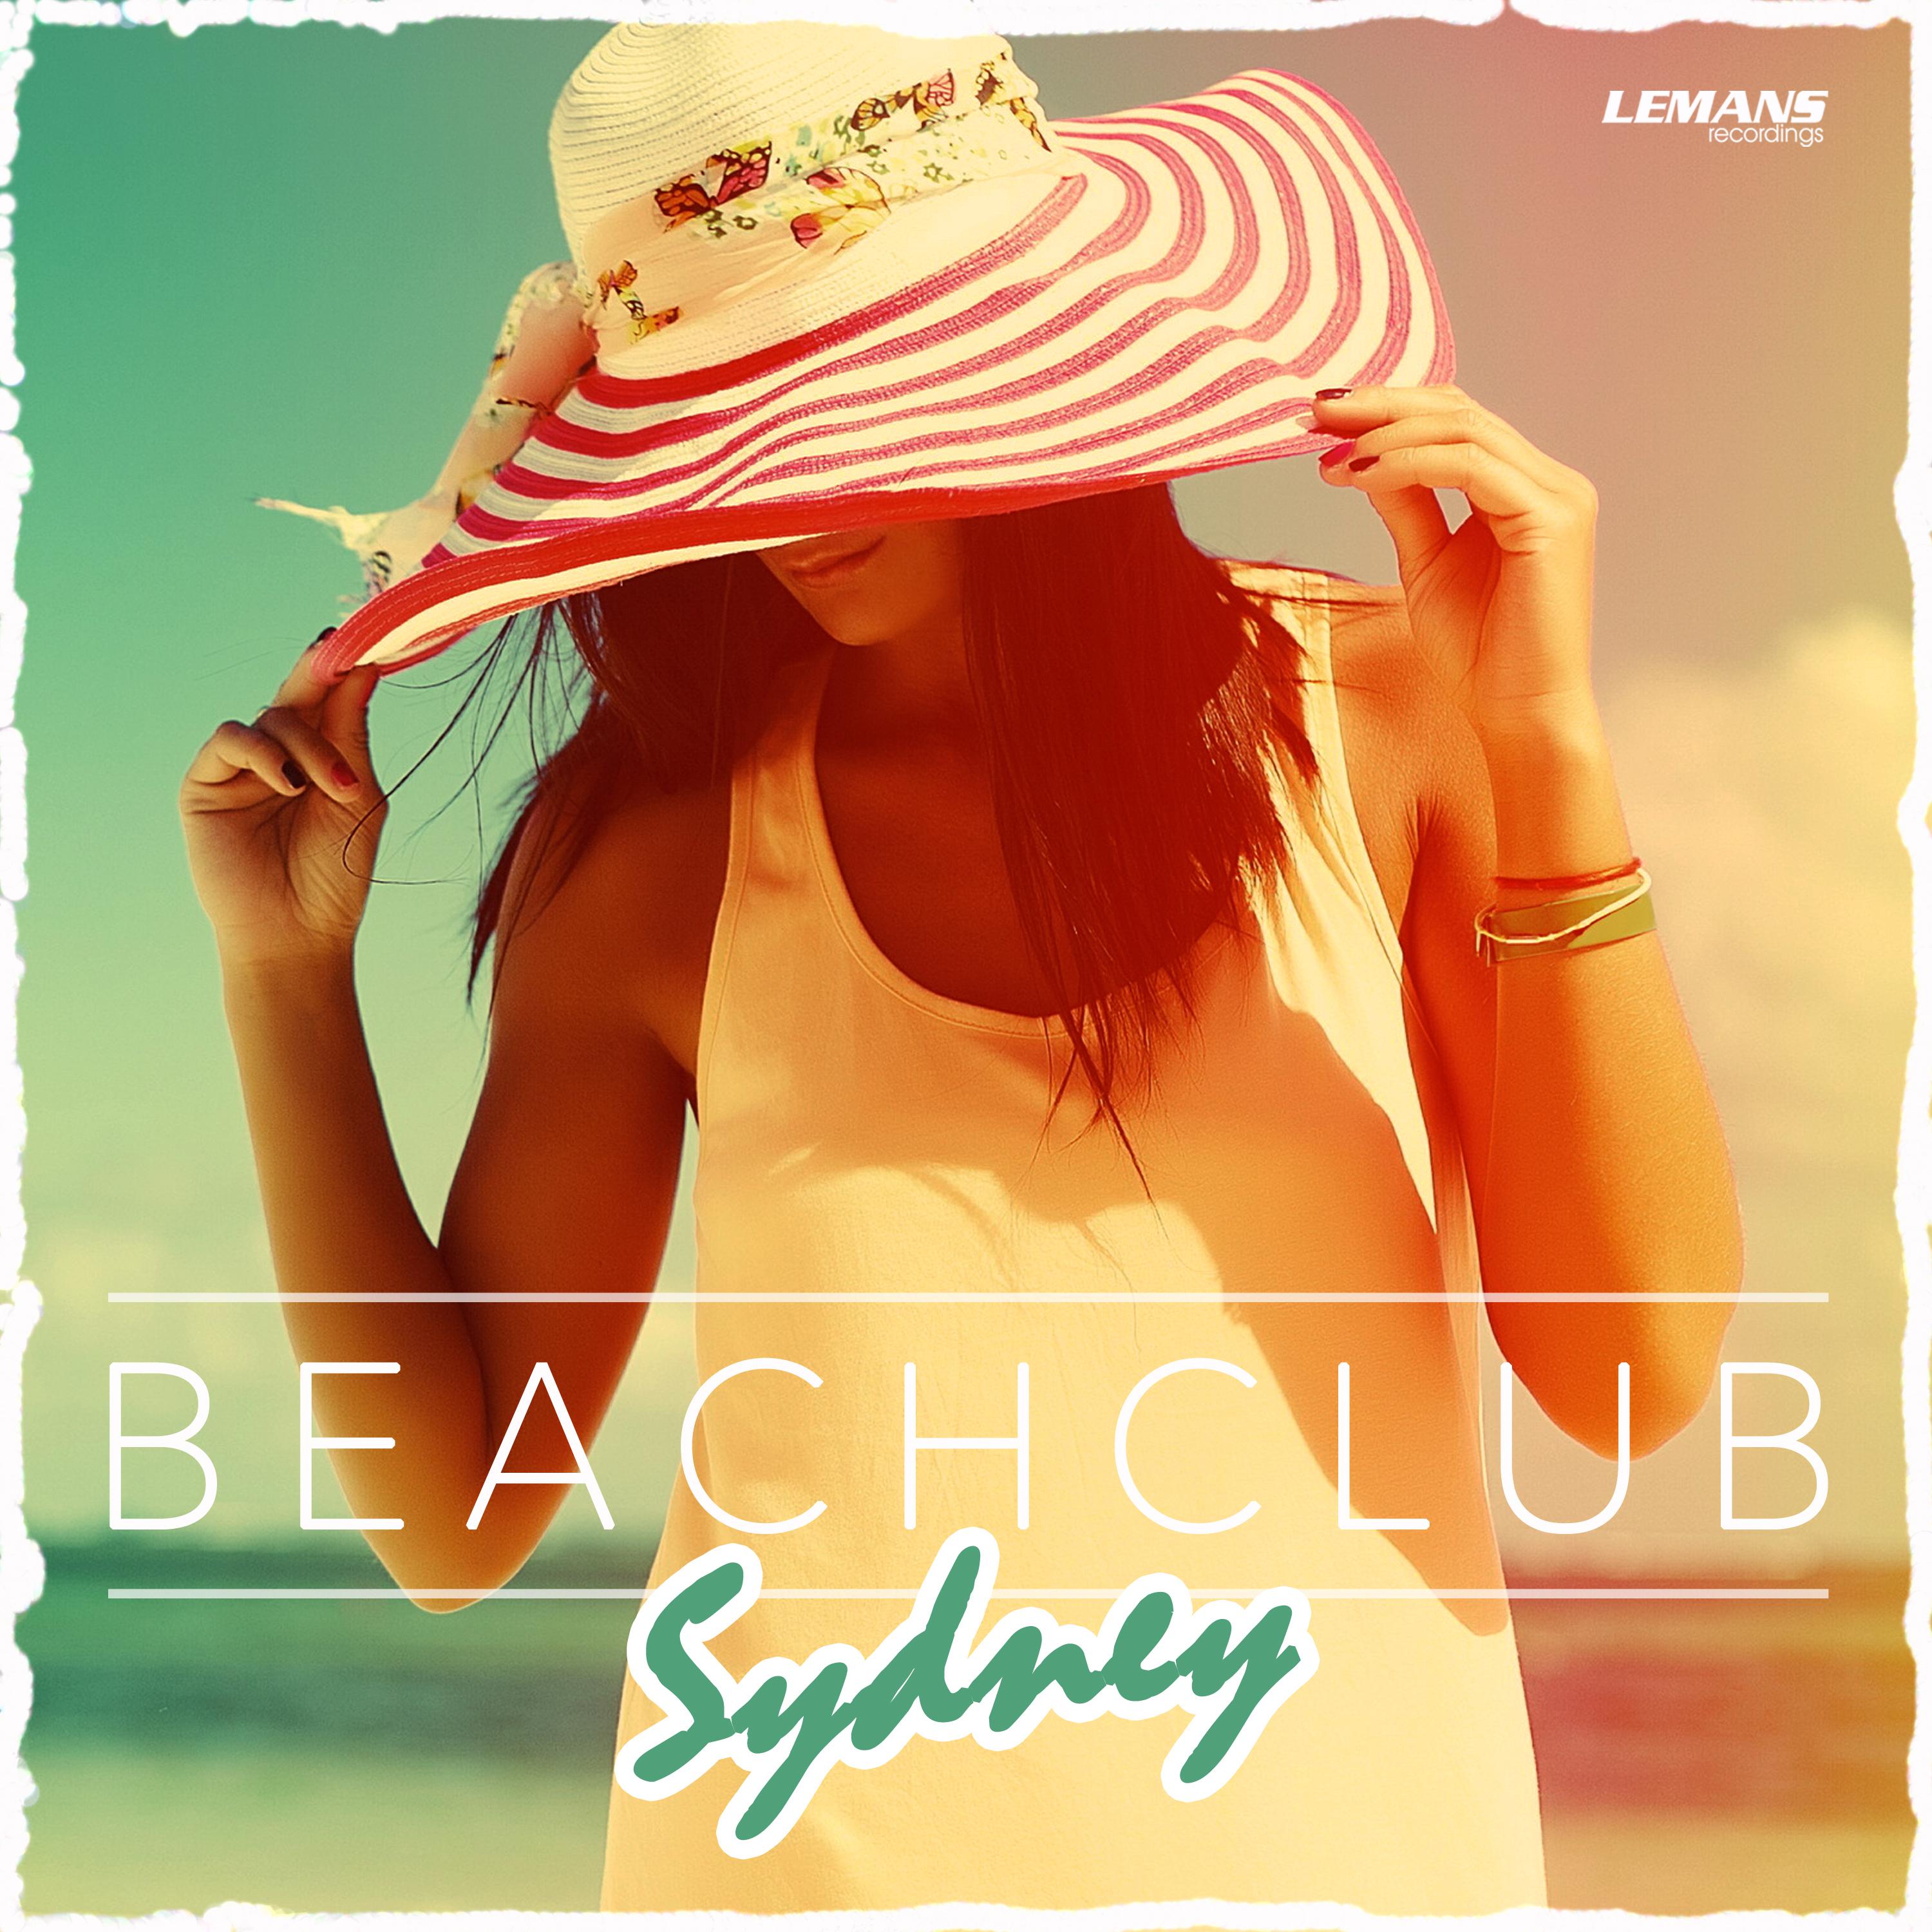 Beach Club Sydney